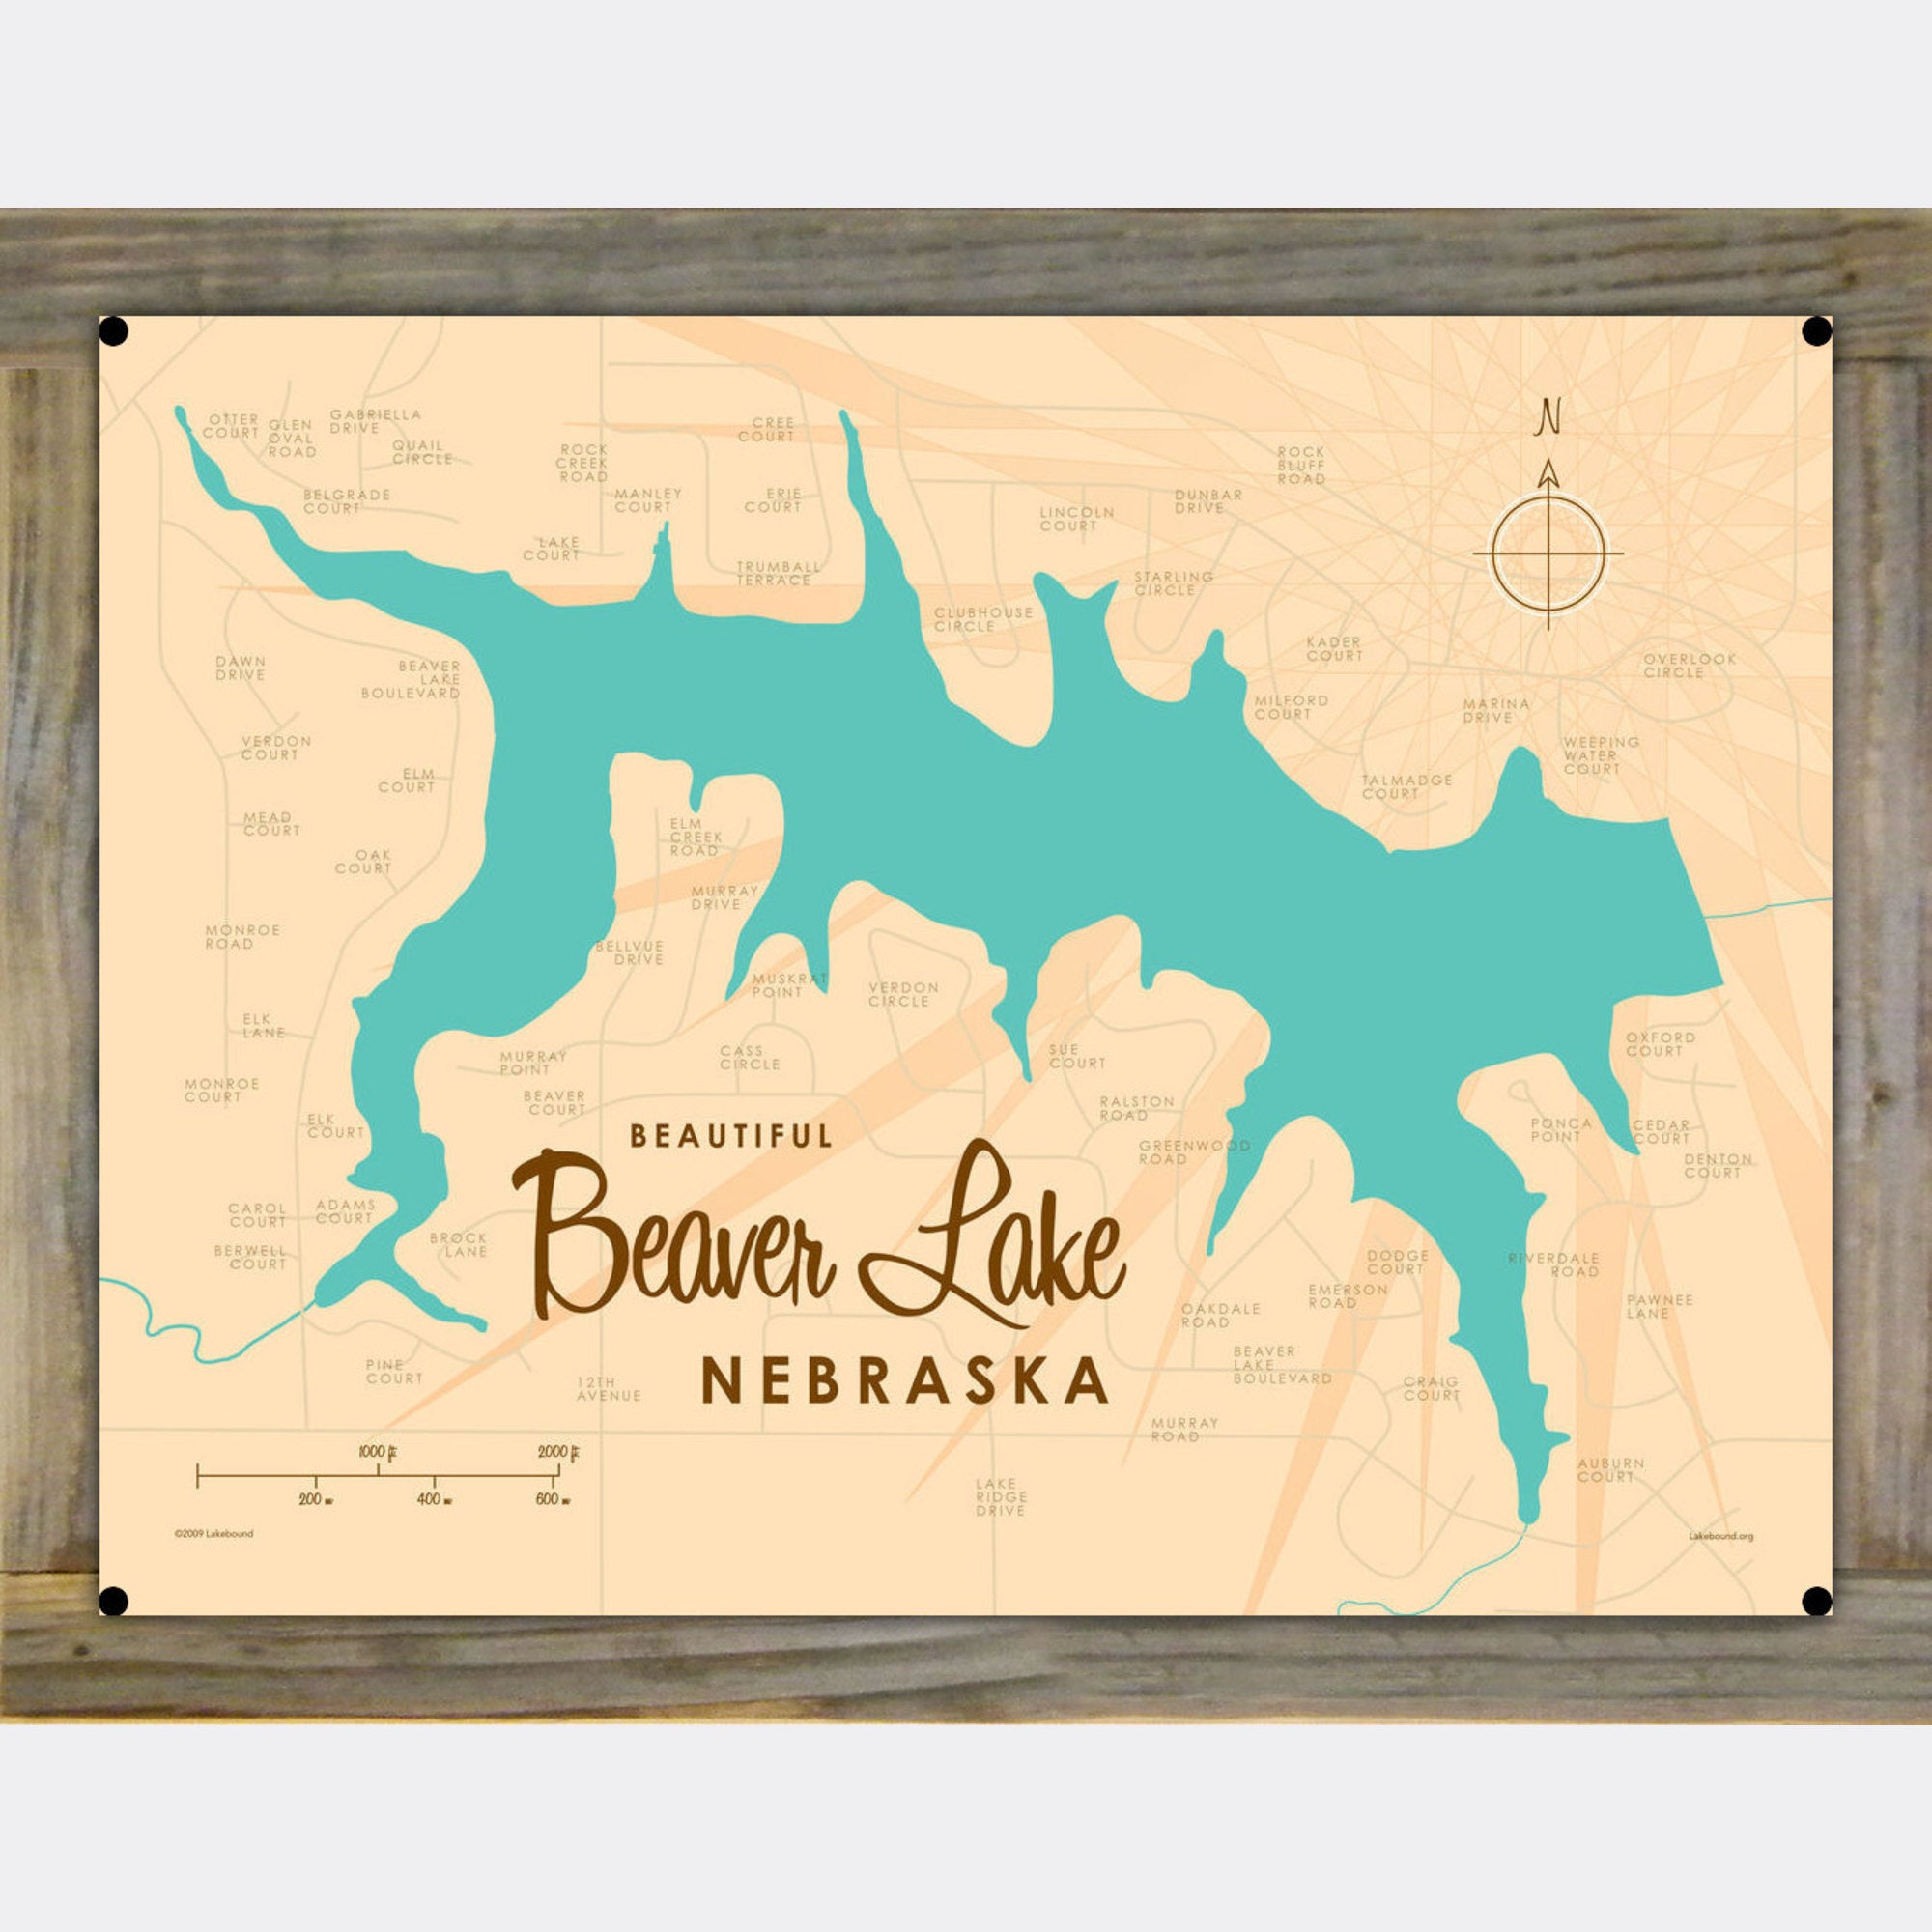 Beaver Lake Nebraska, Wood-Mounted Metal Sign Map Art